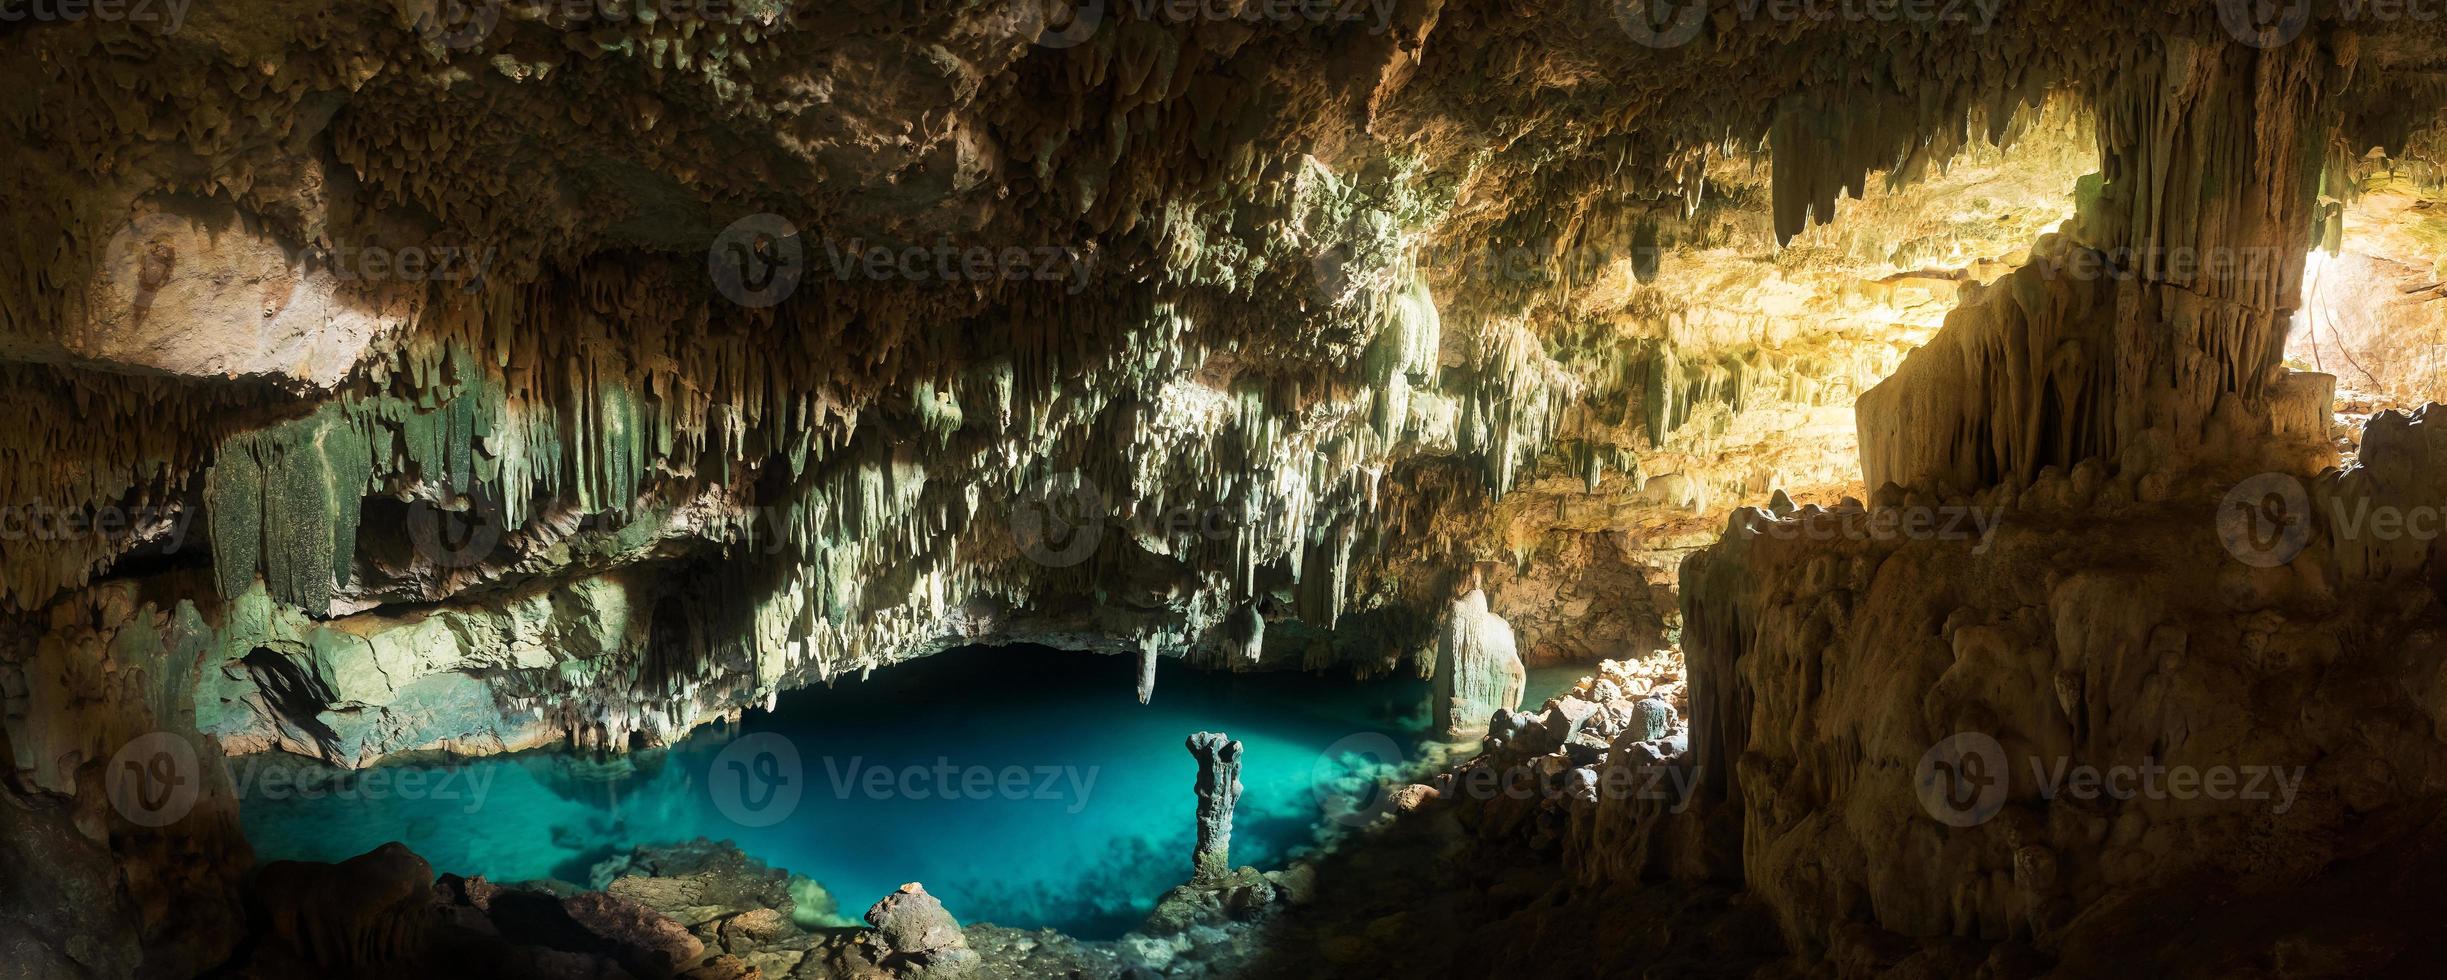 Cueva rangko en la isla de flores, labuan bajo, indonesia foto